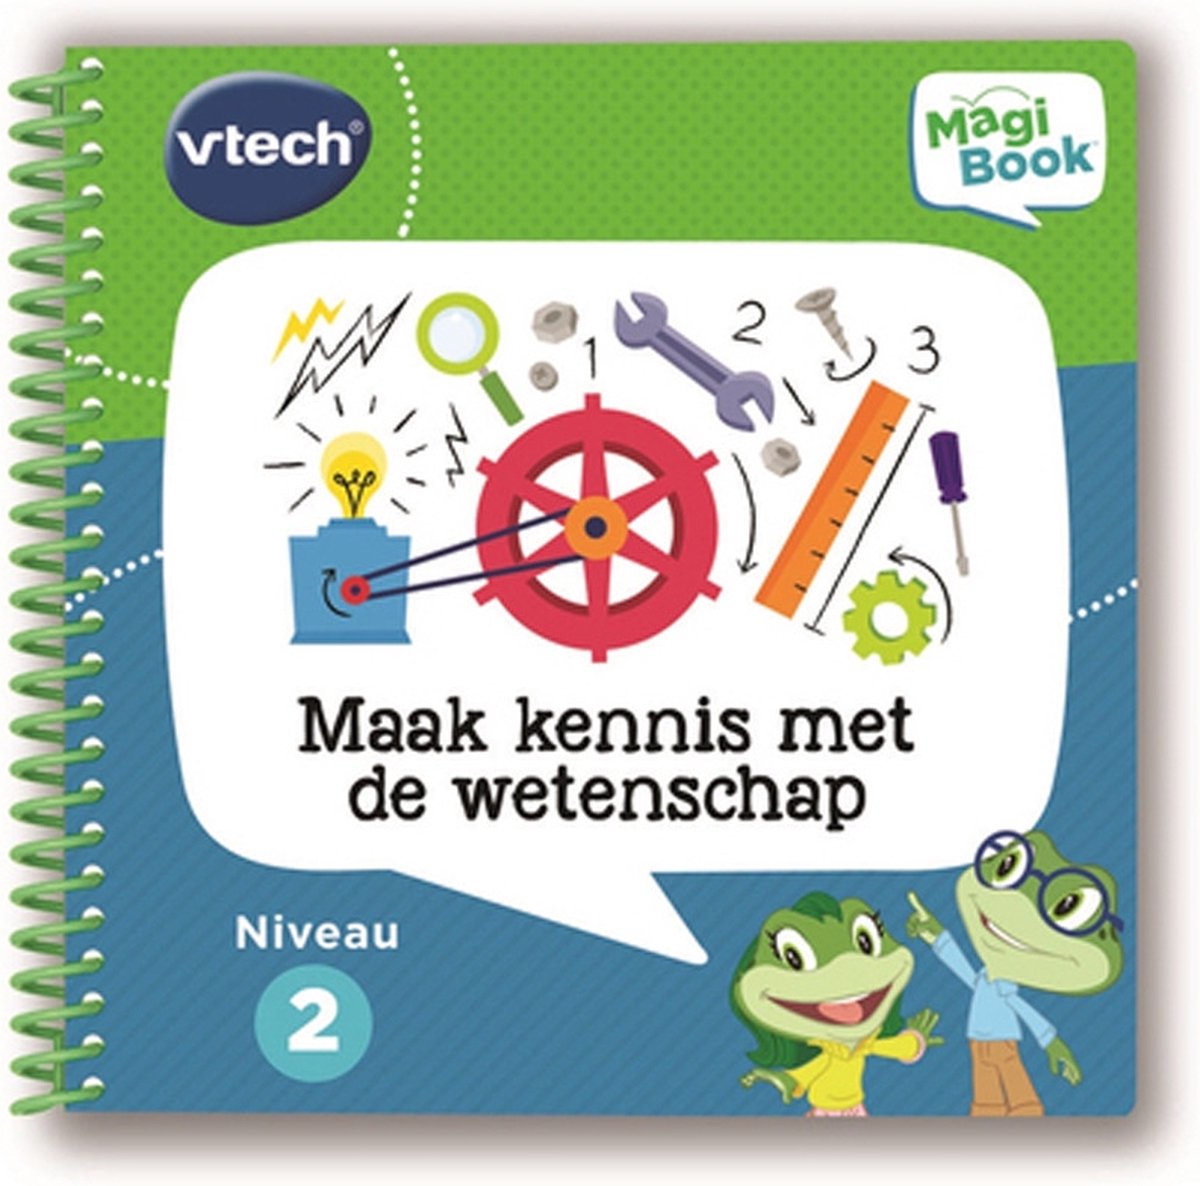 ② Vtech Magibook v2 Nederlands — Jouets